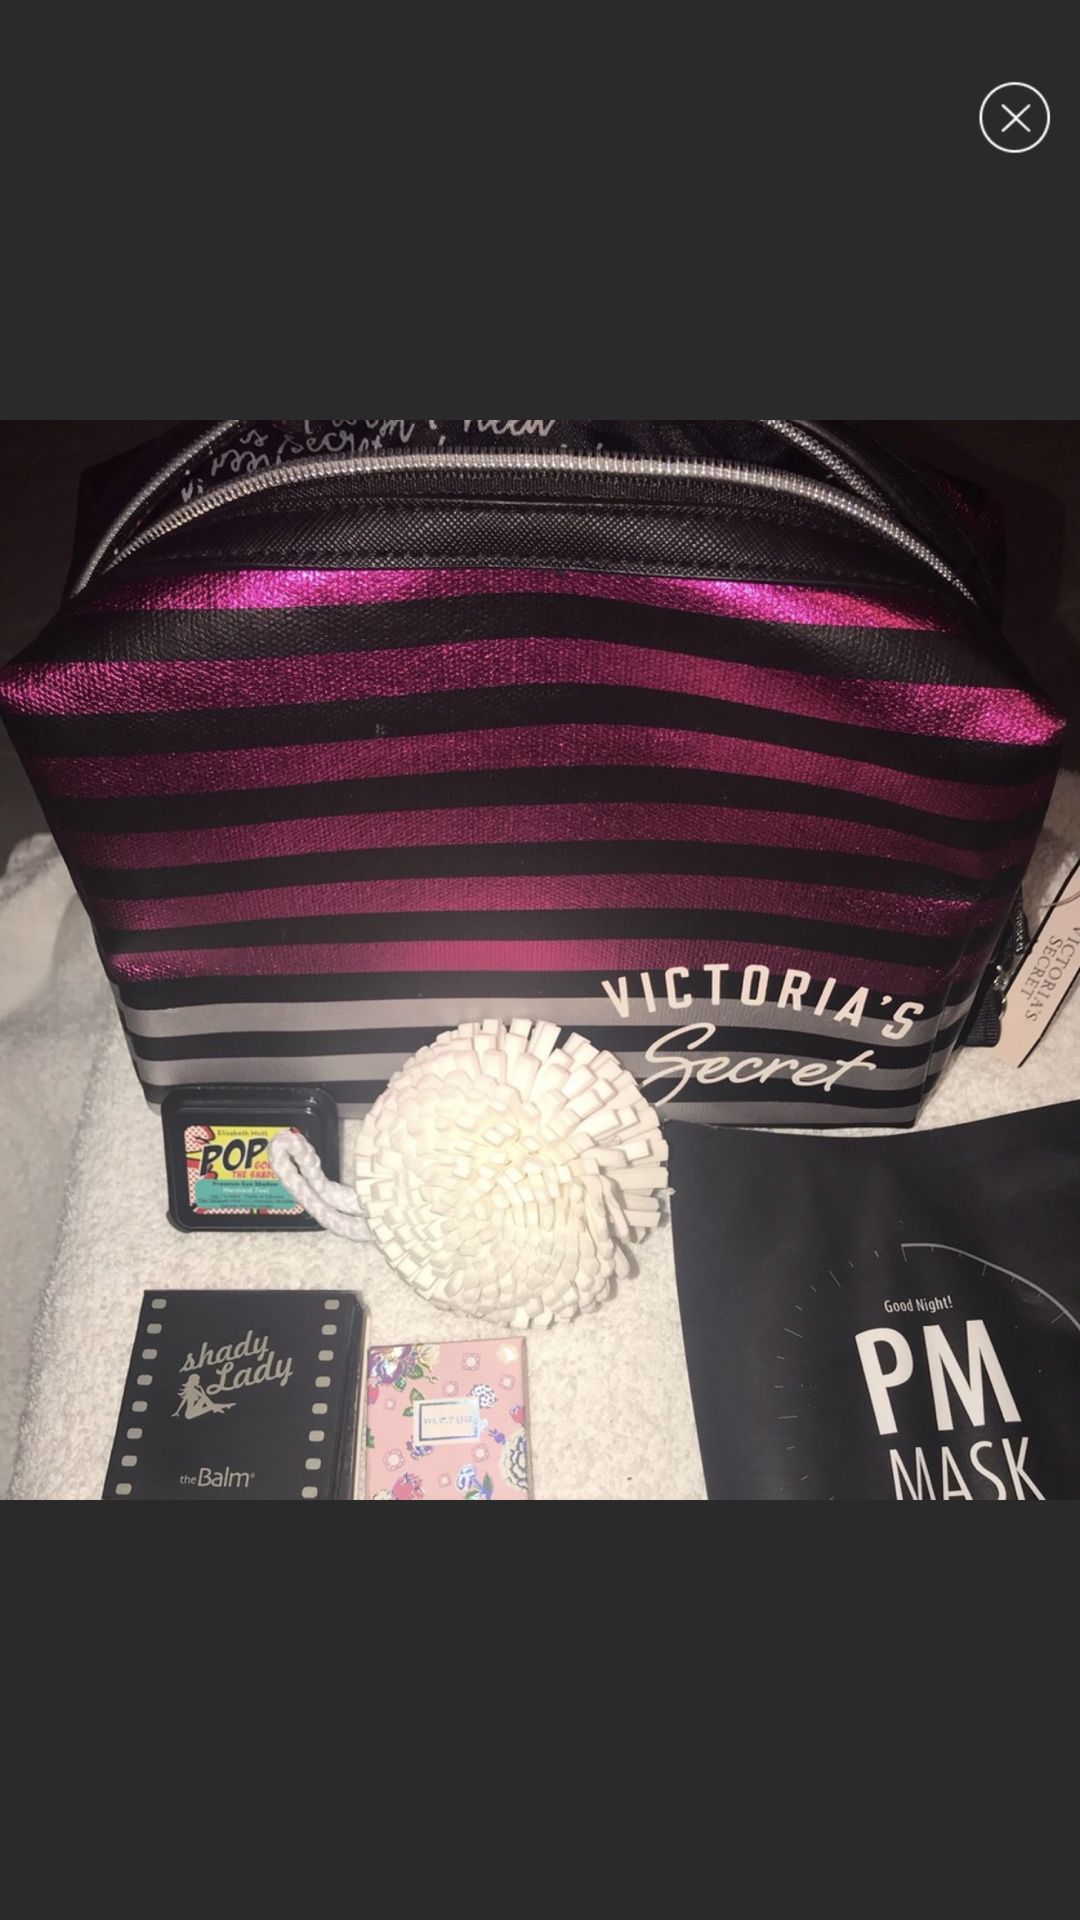 NEW Victoria secret bag + makeup